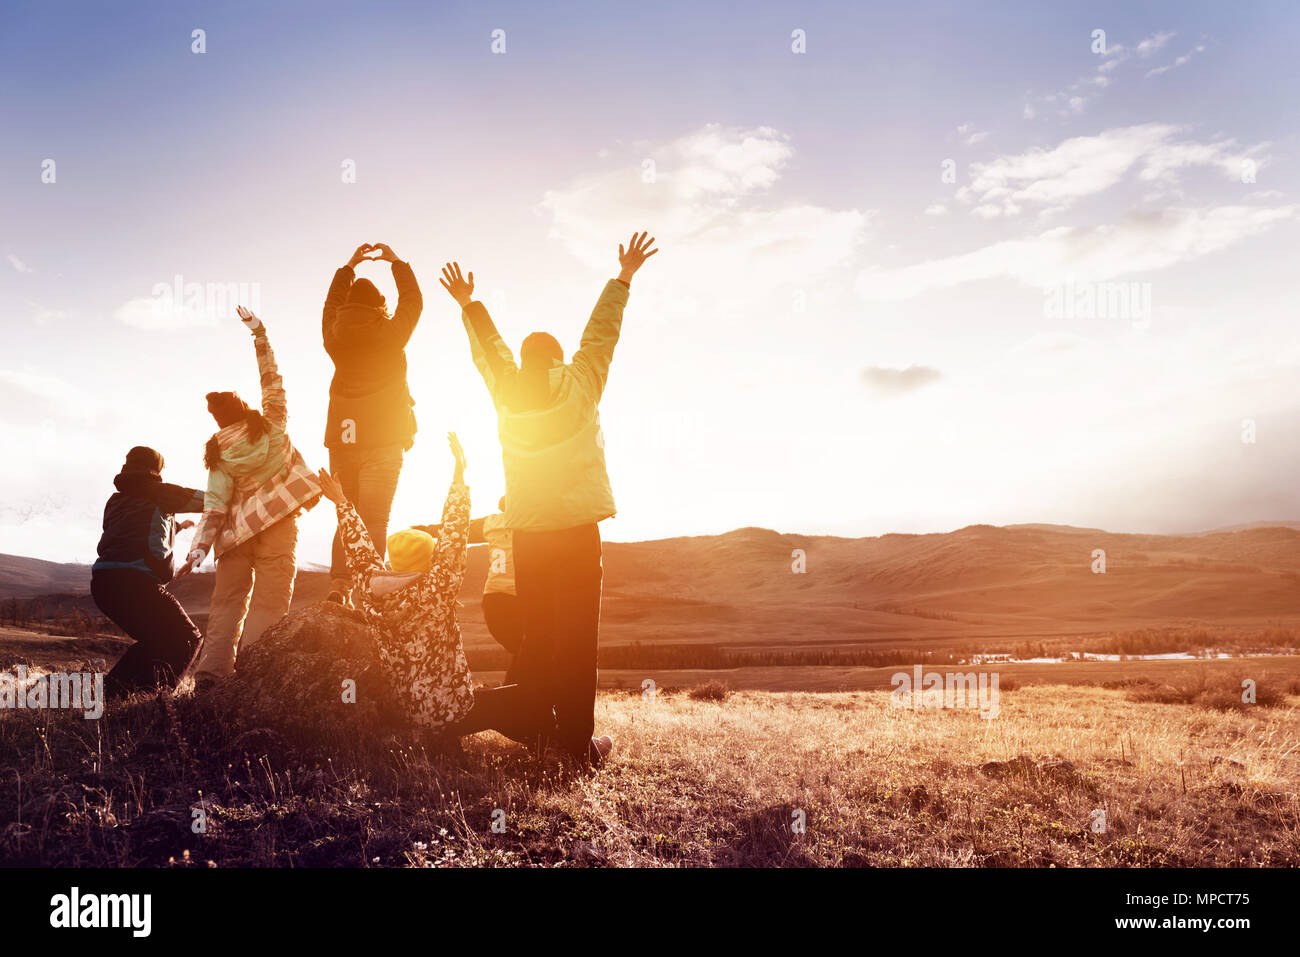 Felice per i turisti con i bracci sollevati contro il tramonto Foto Stock